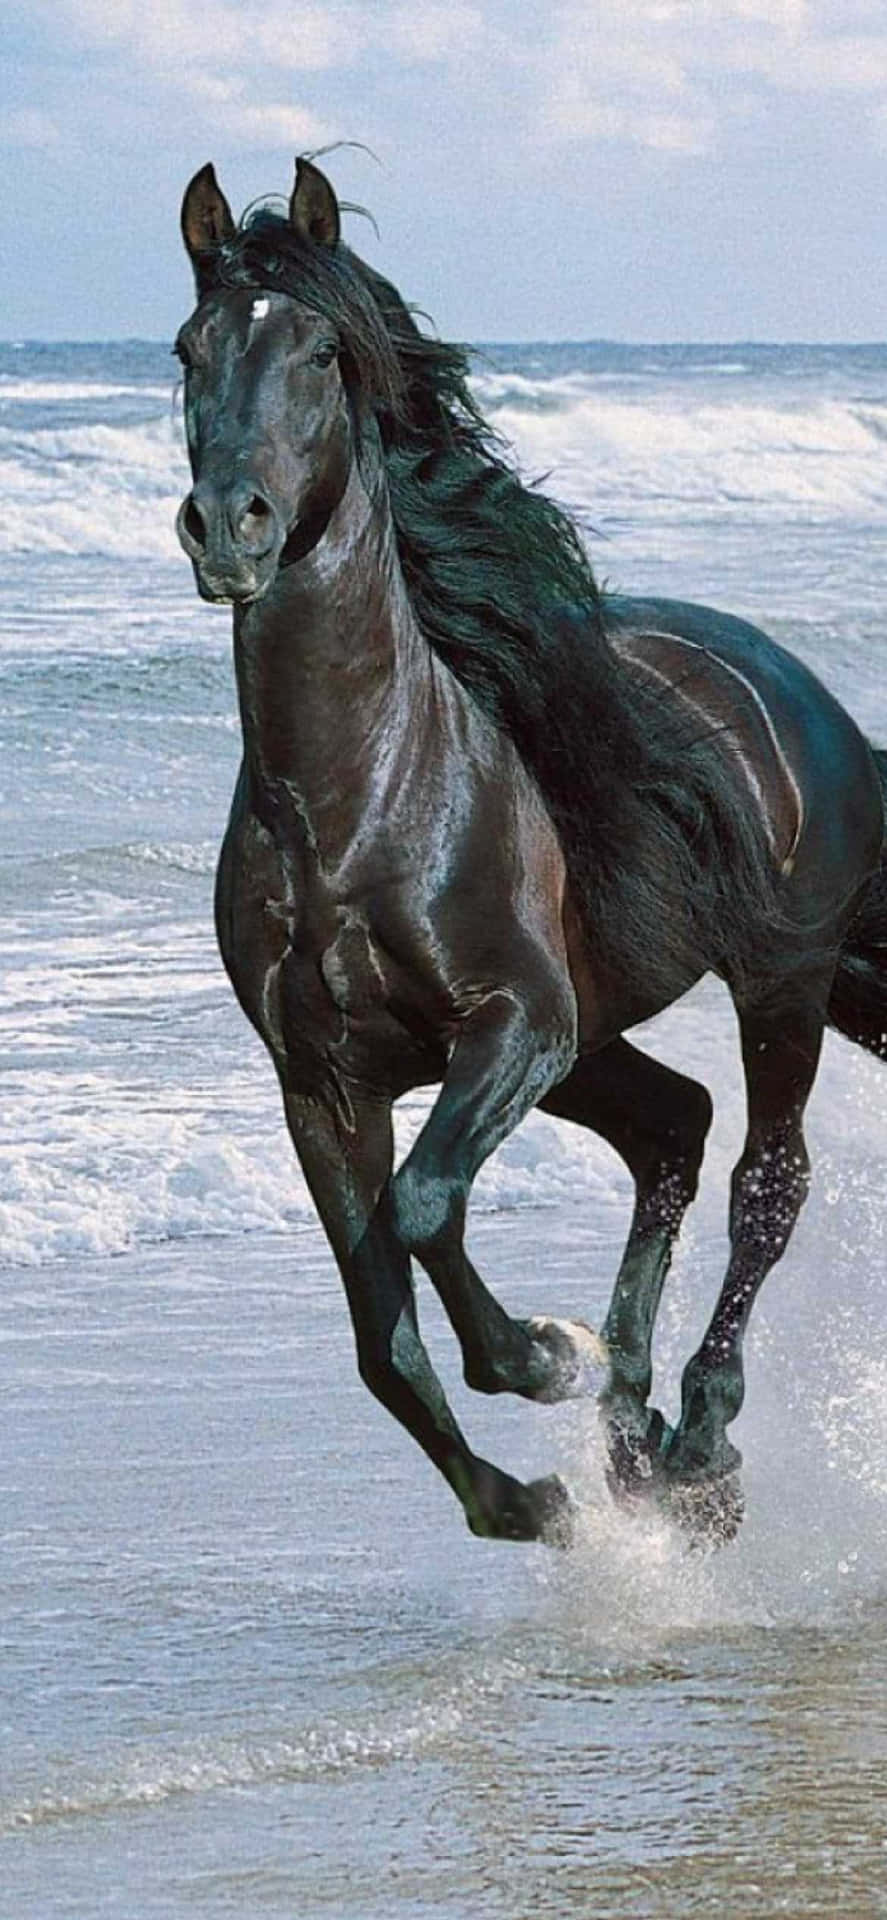 Udlev dit frie ånd med det smukke hest Iphone tapet. Wallpaper